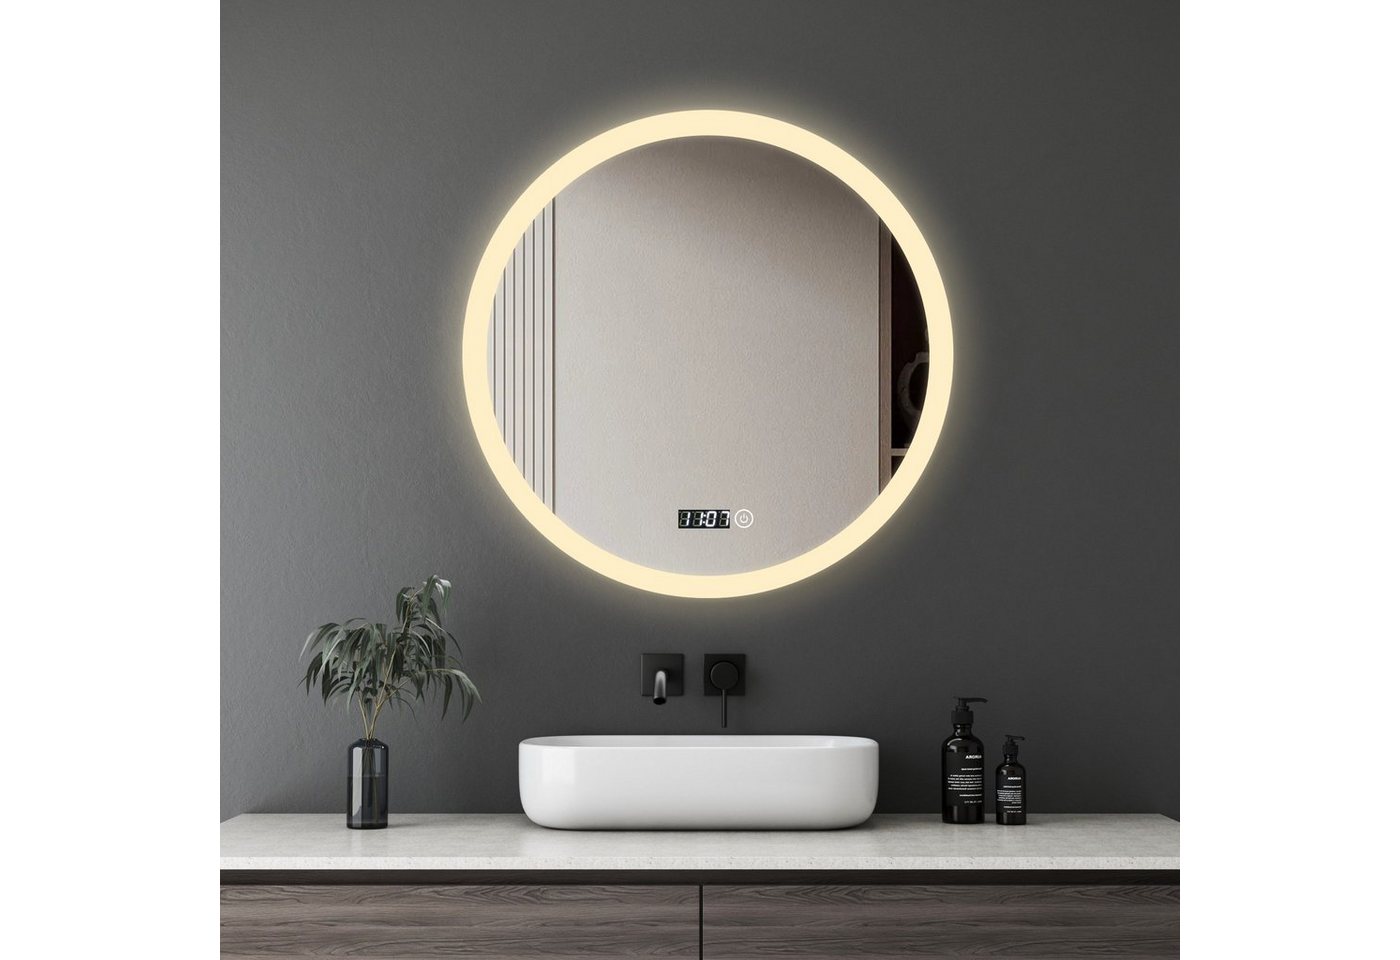 WDWRITTI Spiegel Bad mit Warmweiß Beleuchtung Spiegel Rund 60 cm (Rundspiegel mit Touch Wandschalter, 3Lichtfarben, Helligkeit dimmbar), Speicherfunktion, energiesparender von WDWRITTI